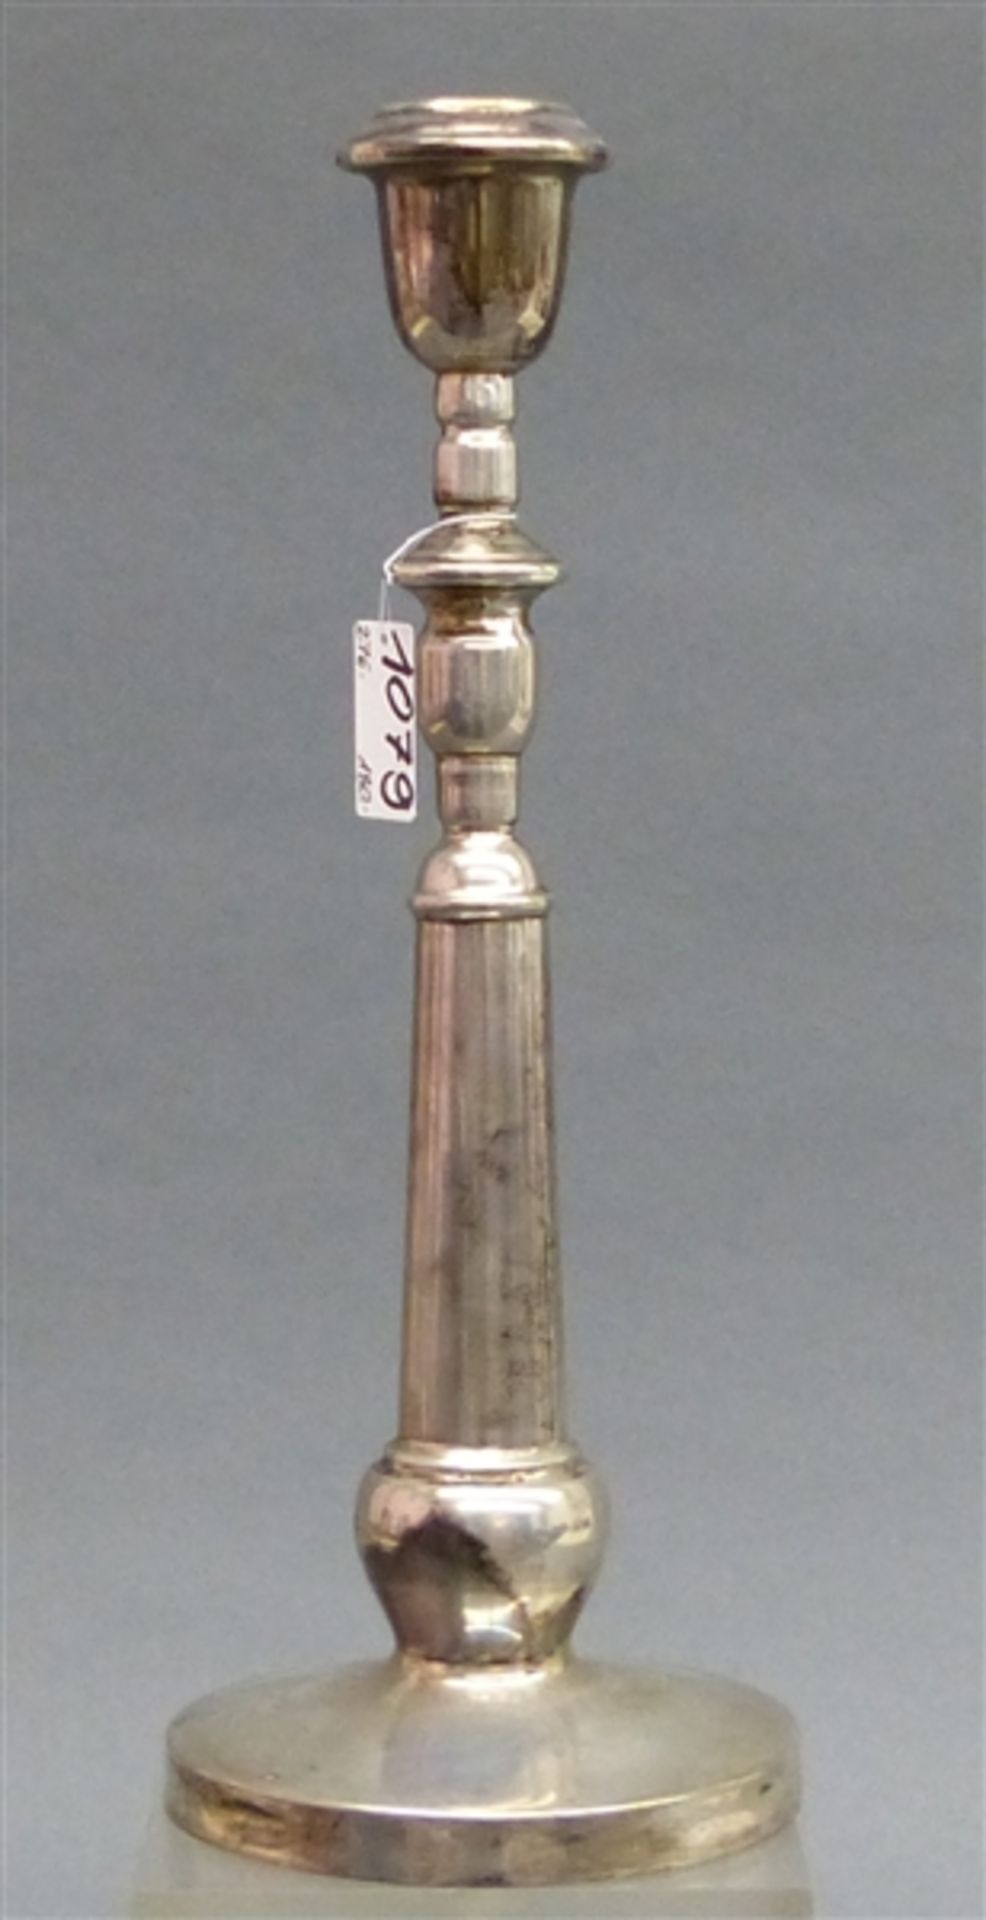 Kerzenleuchter Silber, neuzeitlich, punziert, g 26 cm, 233 g schwer,